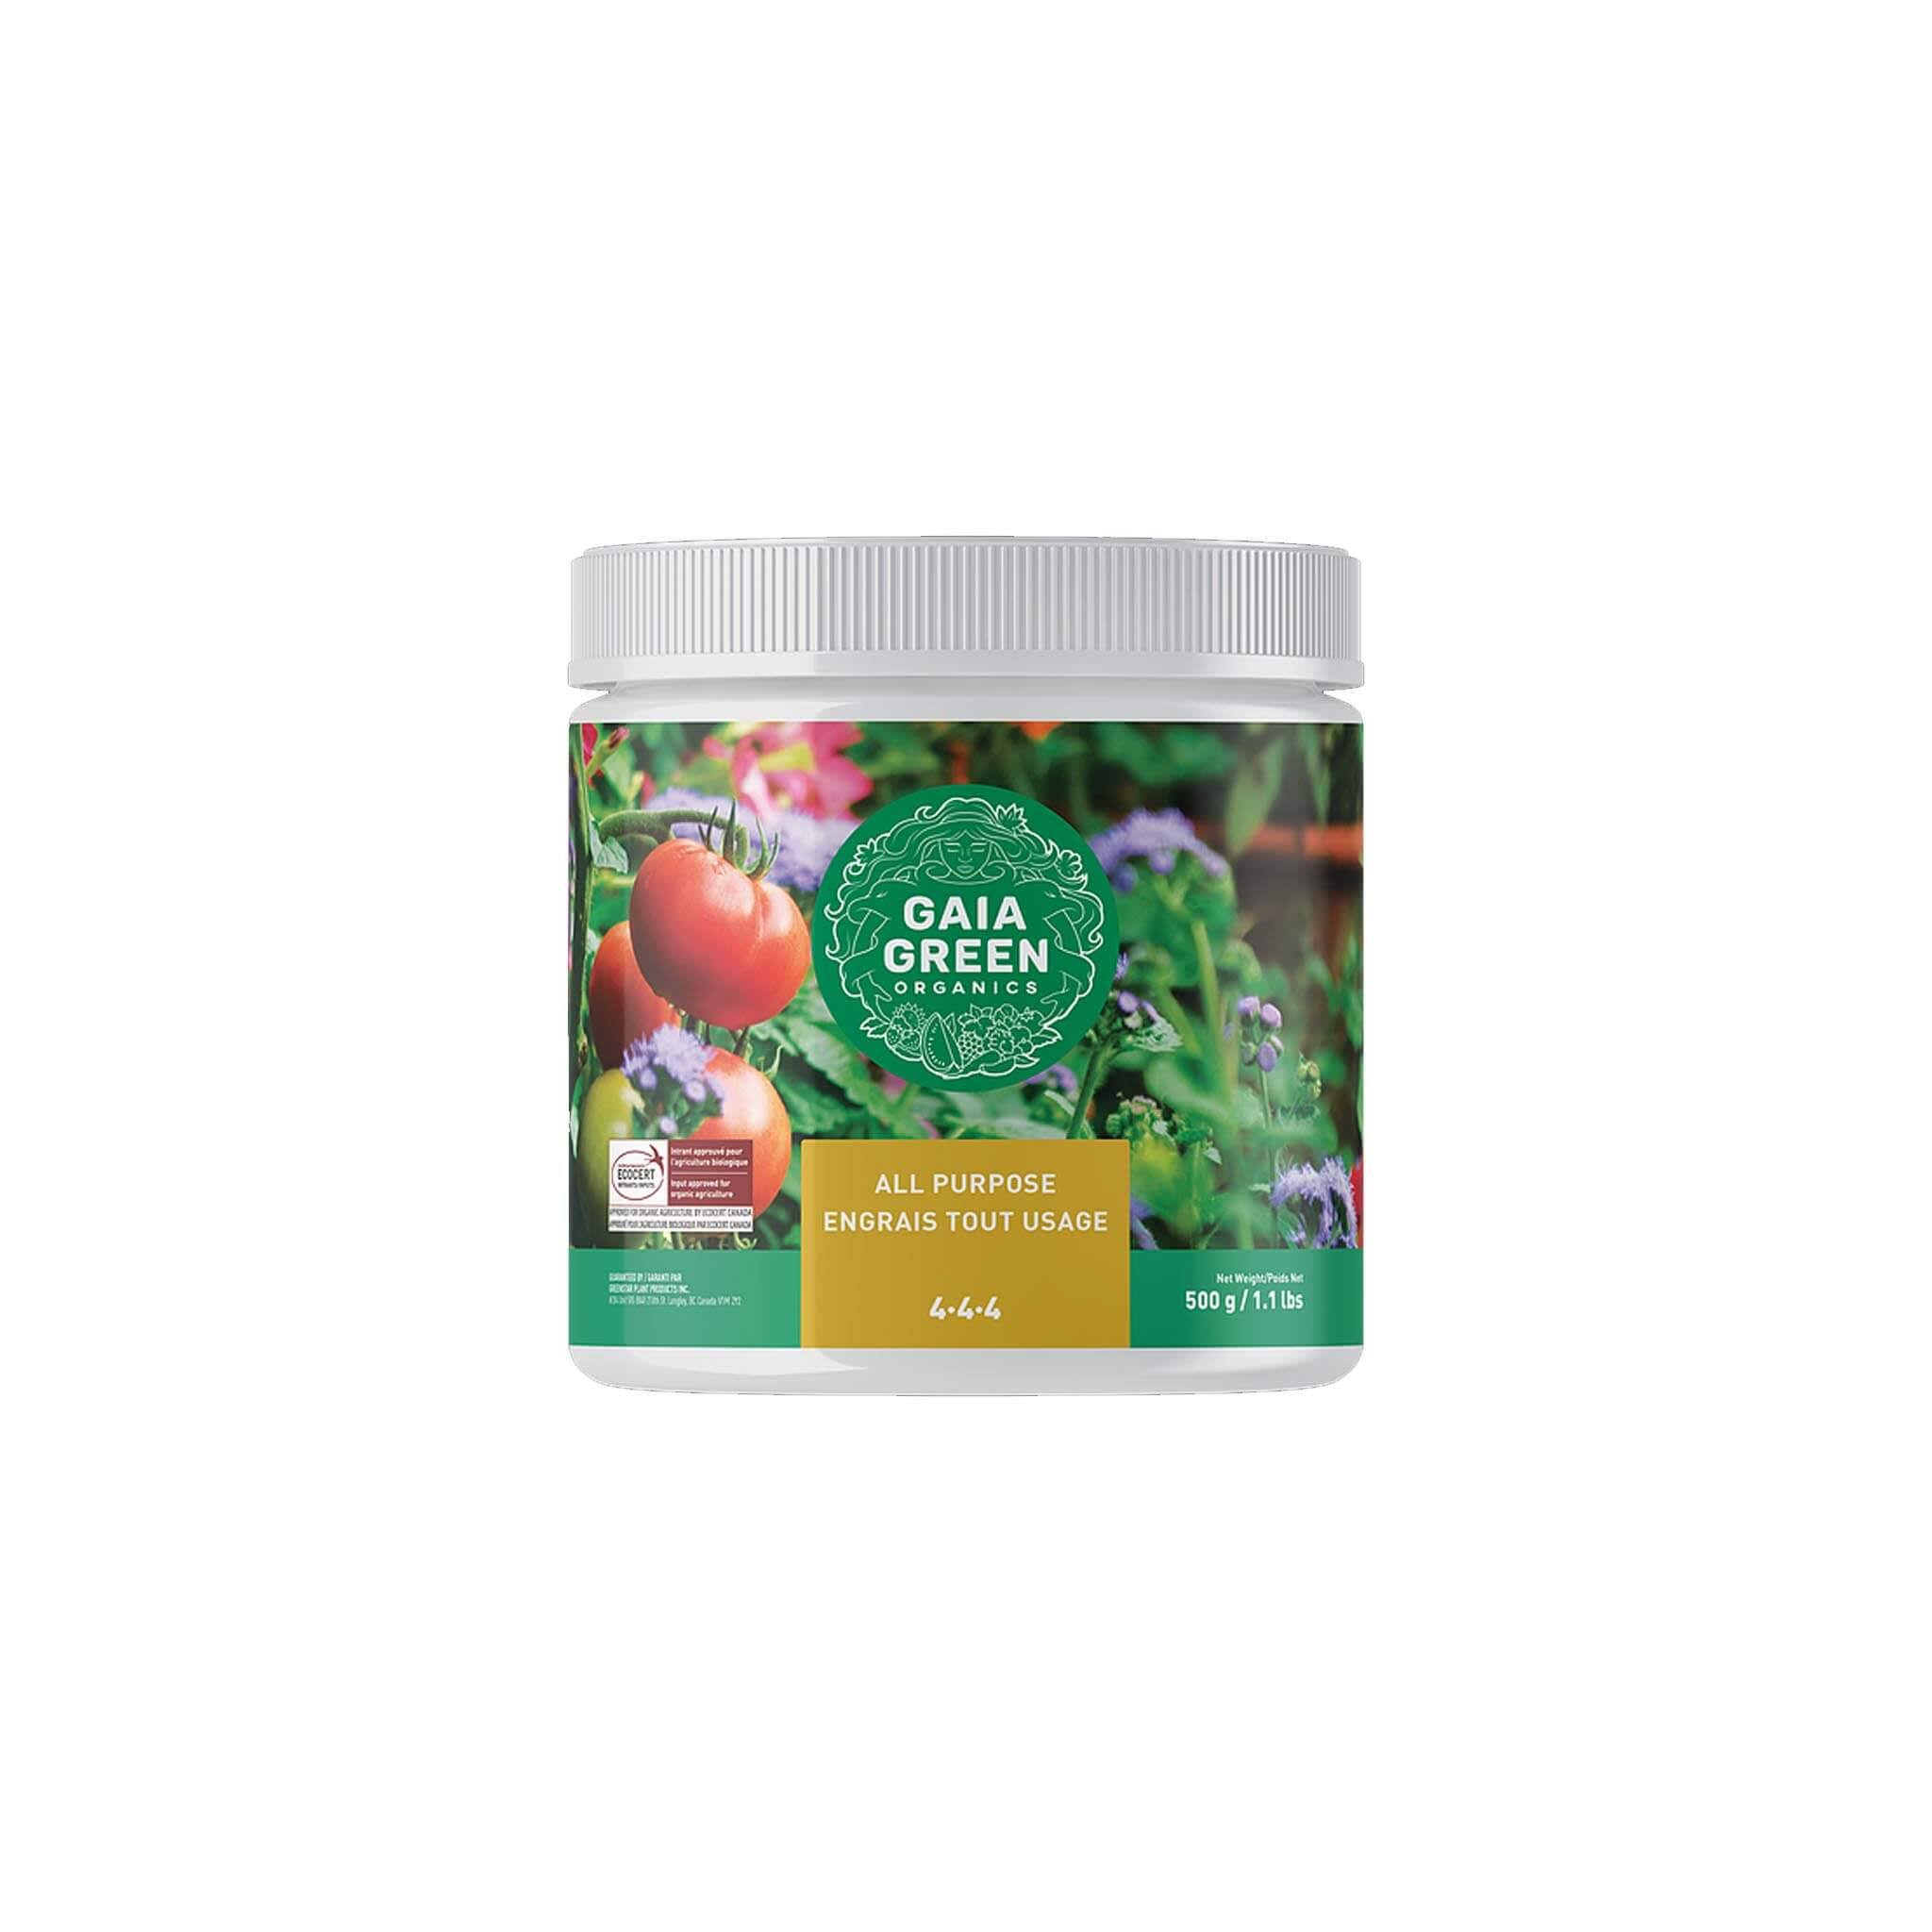 Gaia Green All Purpose Fertilizer 4-4-4, 2 kg